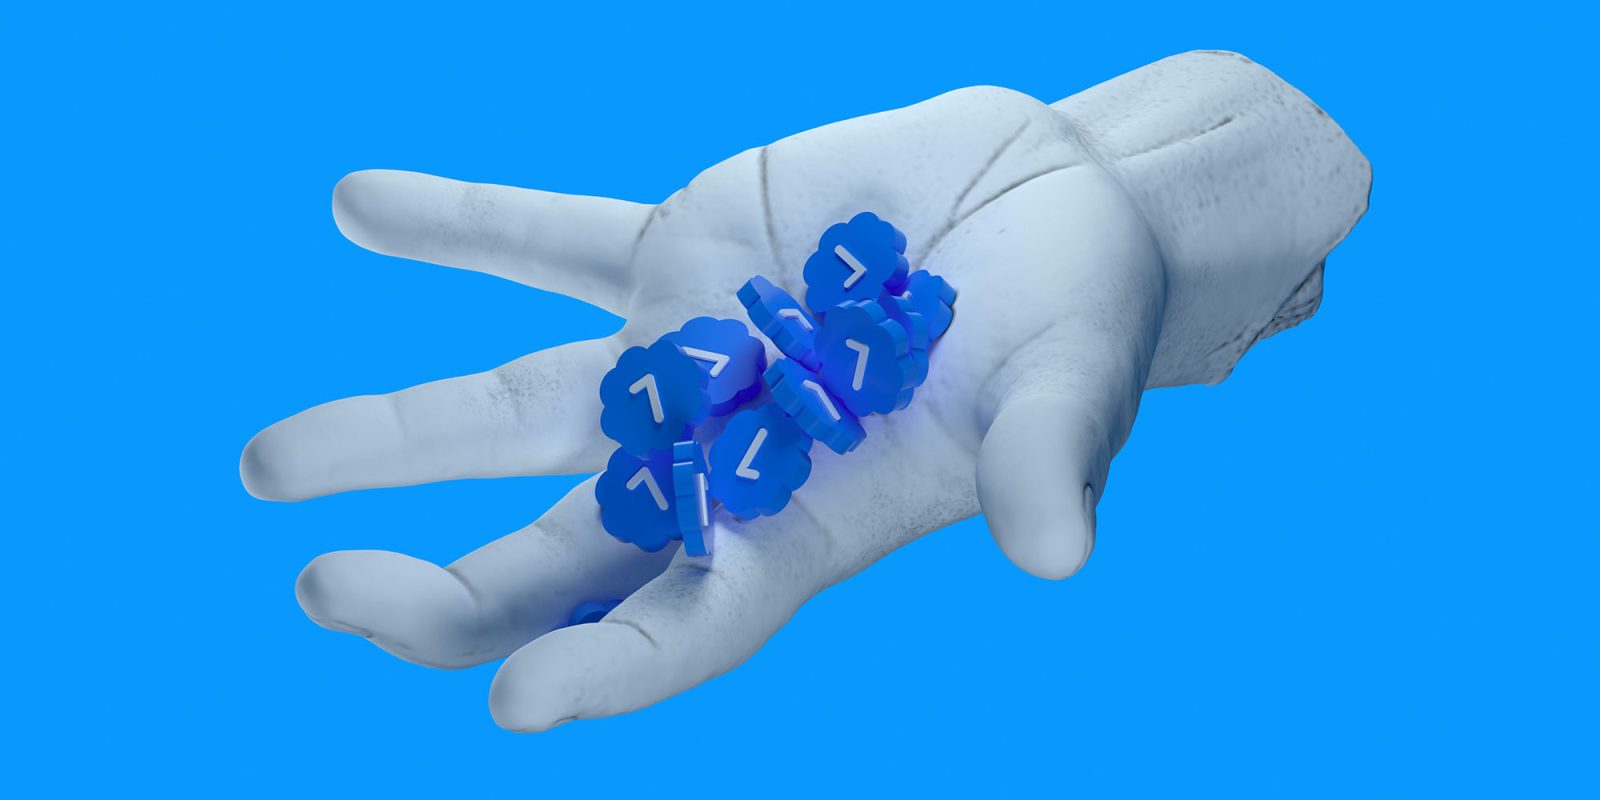 X синих галочек в искусственной белой руке